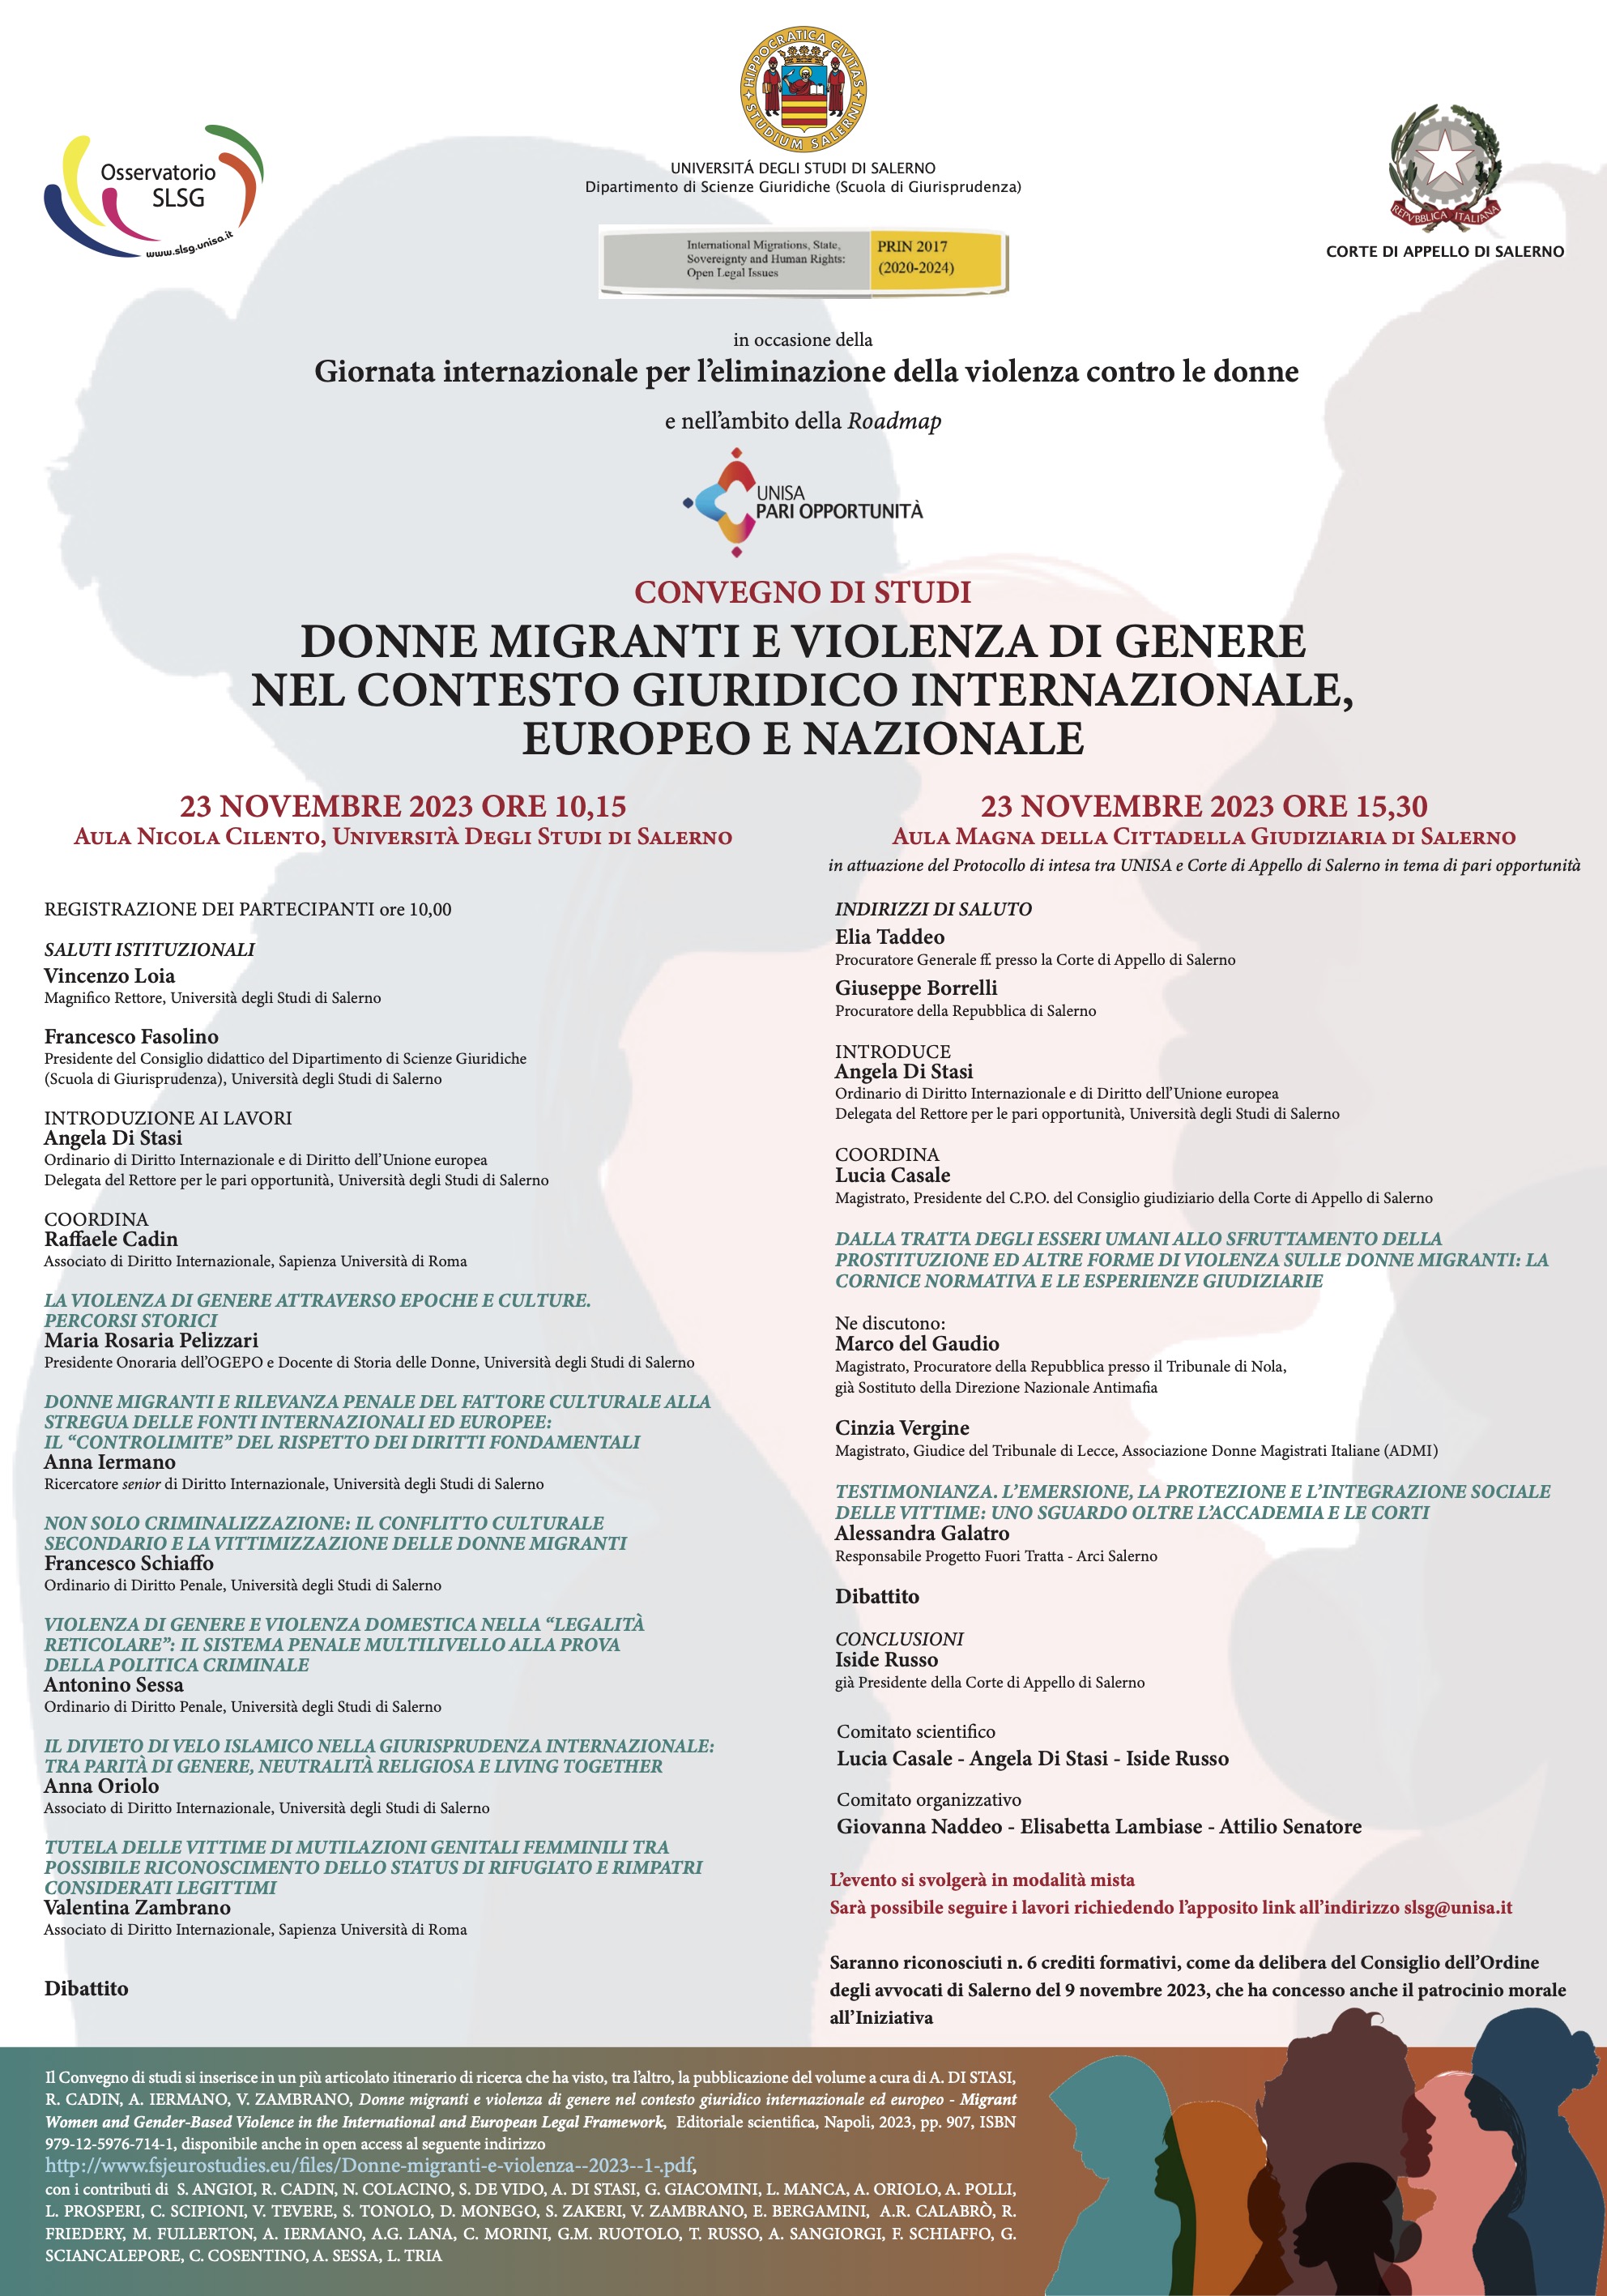 Donne migranti e violenza di genere nel contesto giuridico internazionale, europeo e nazionale